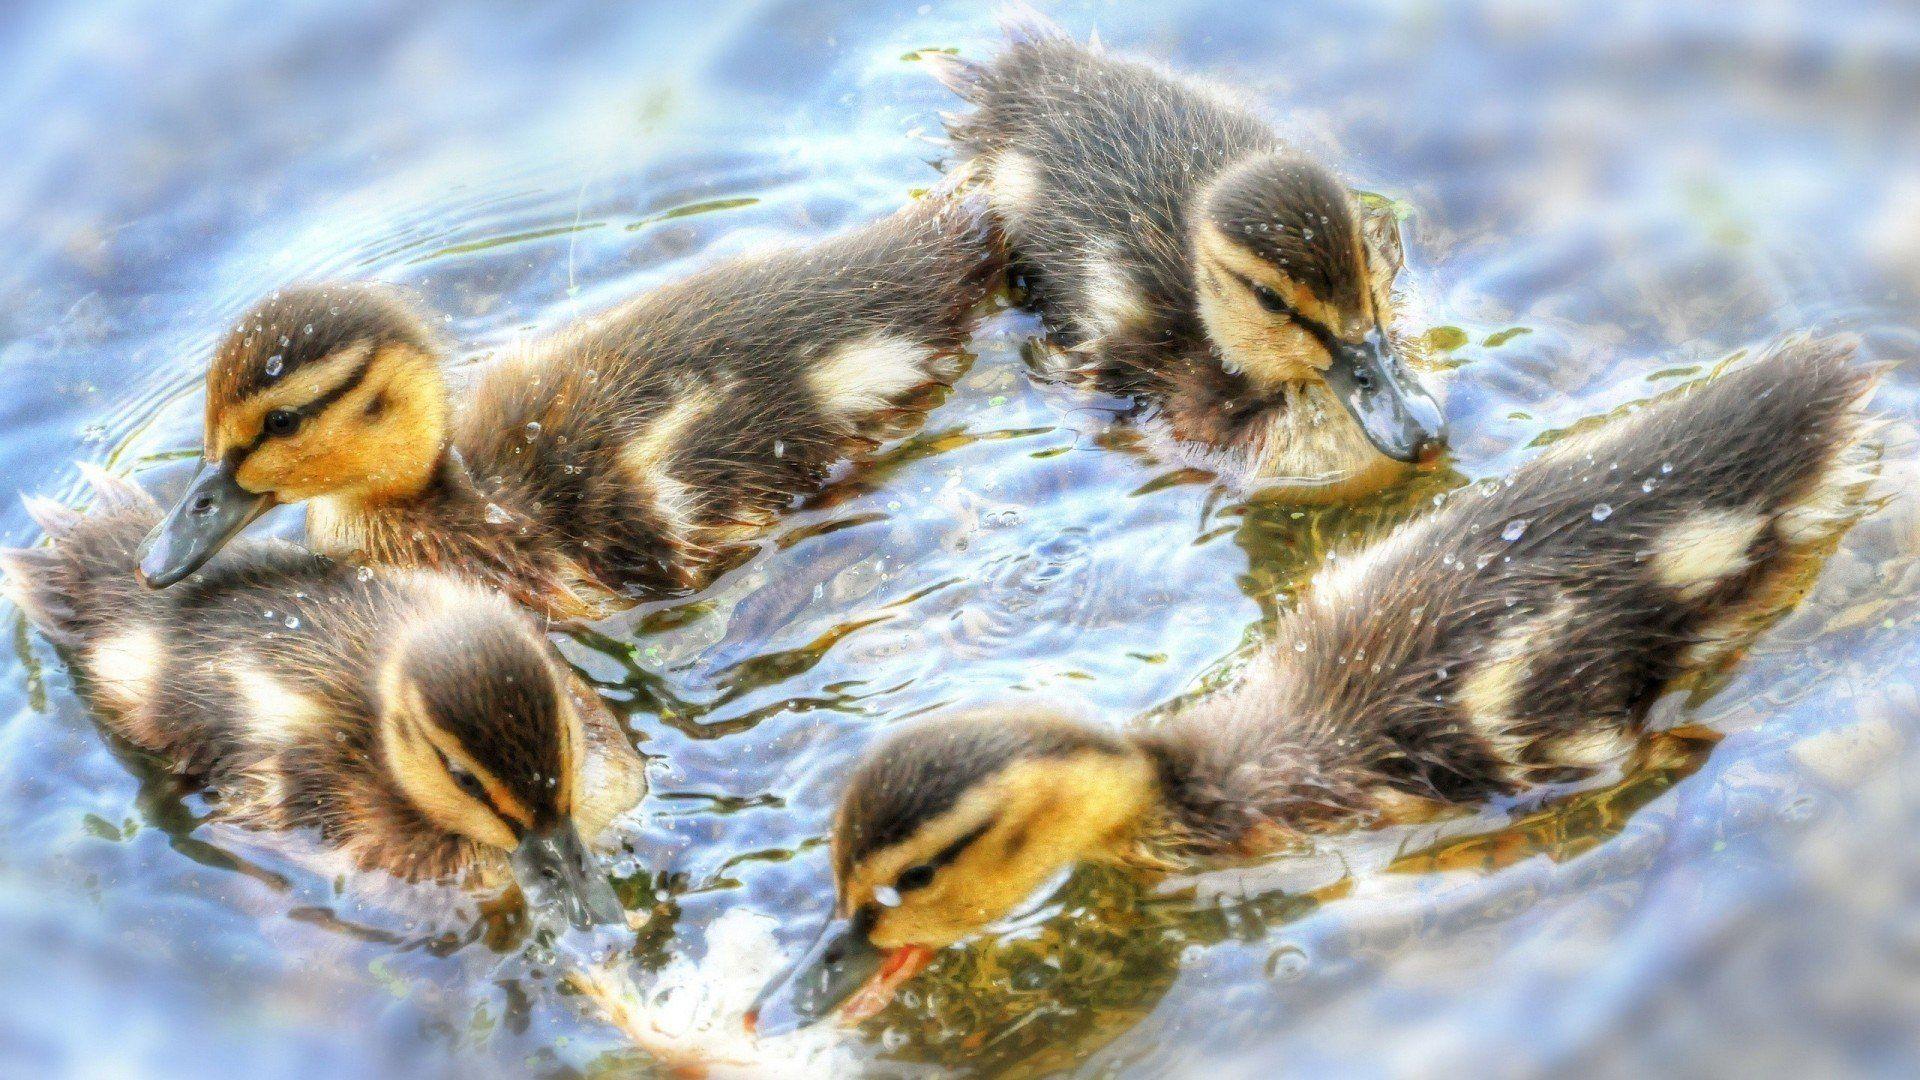 Animals Baby Water Ducks Birds Ducklings